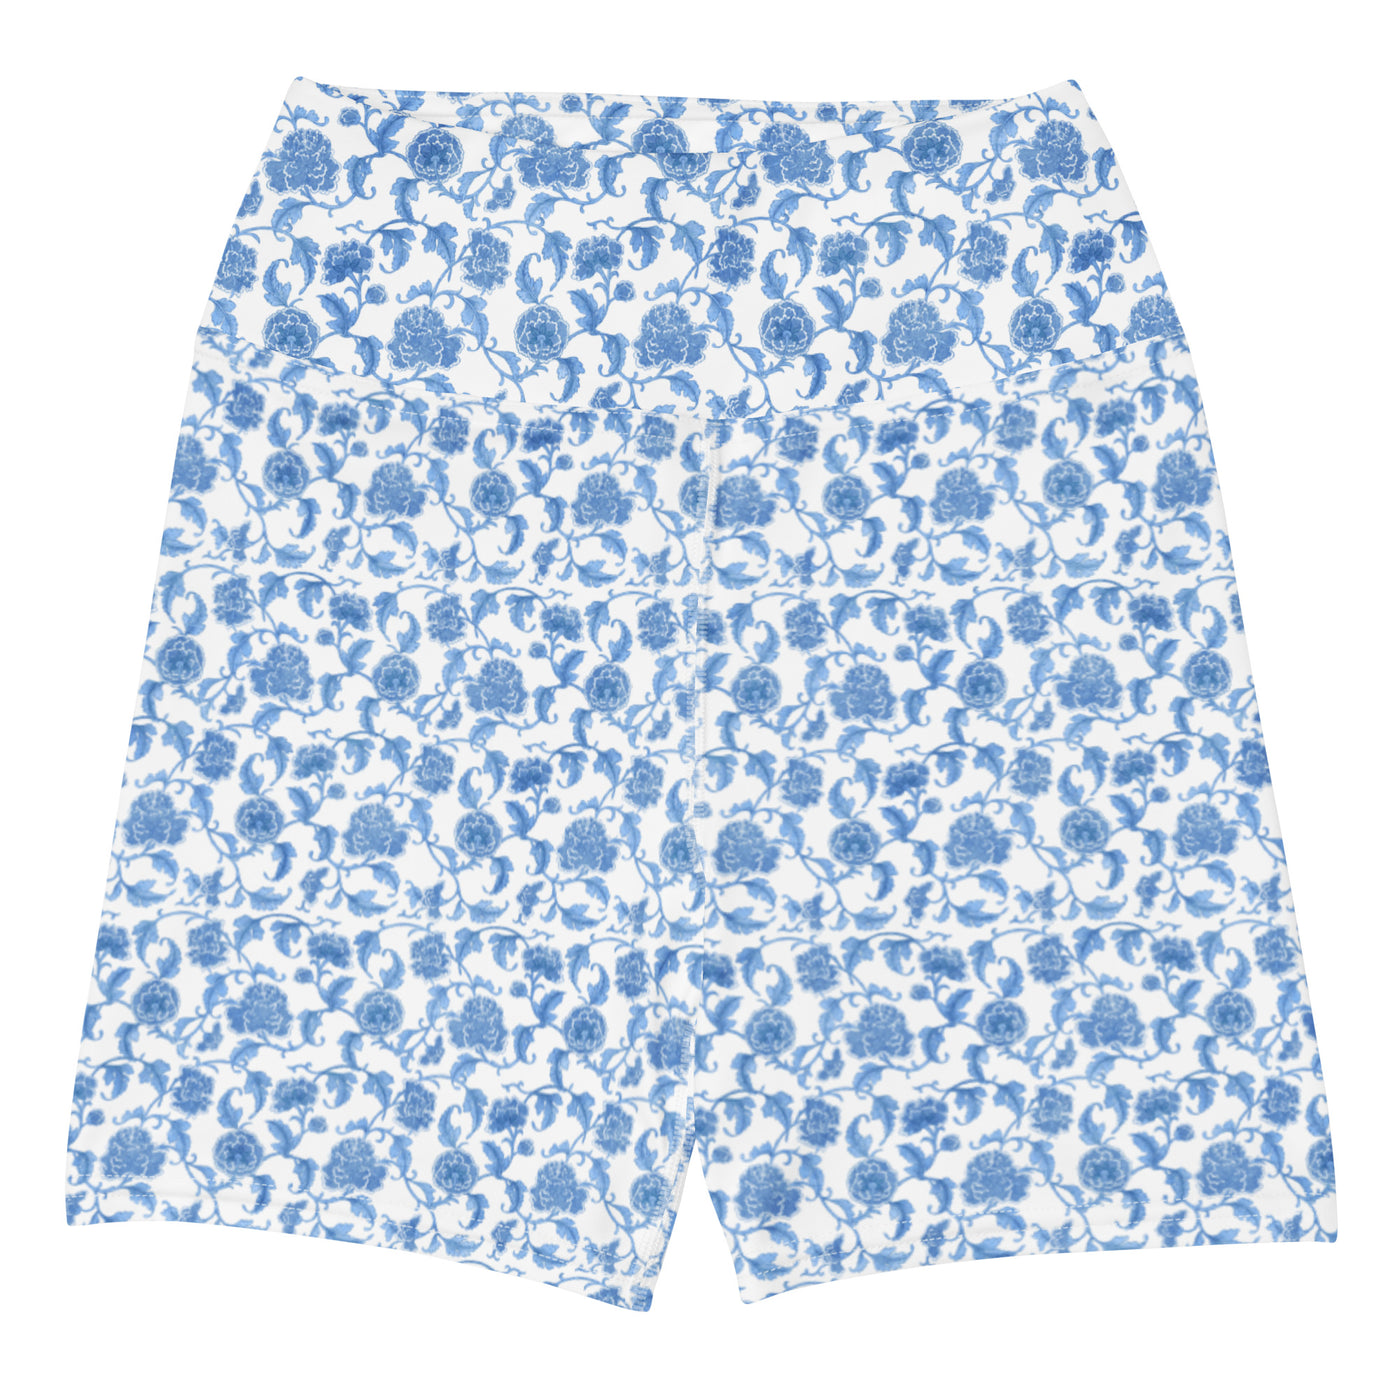 'Blue Summer Breeze' Biker Shorts